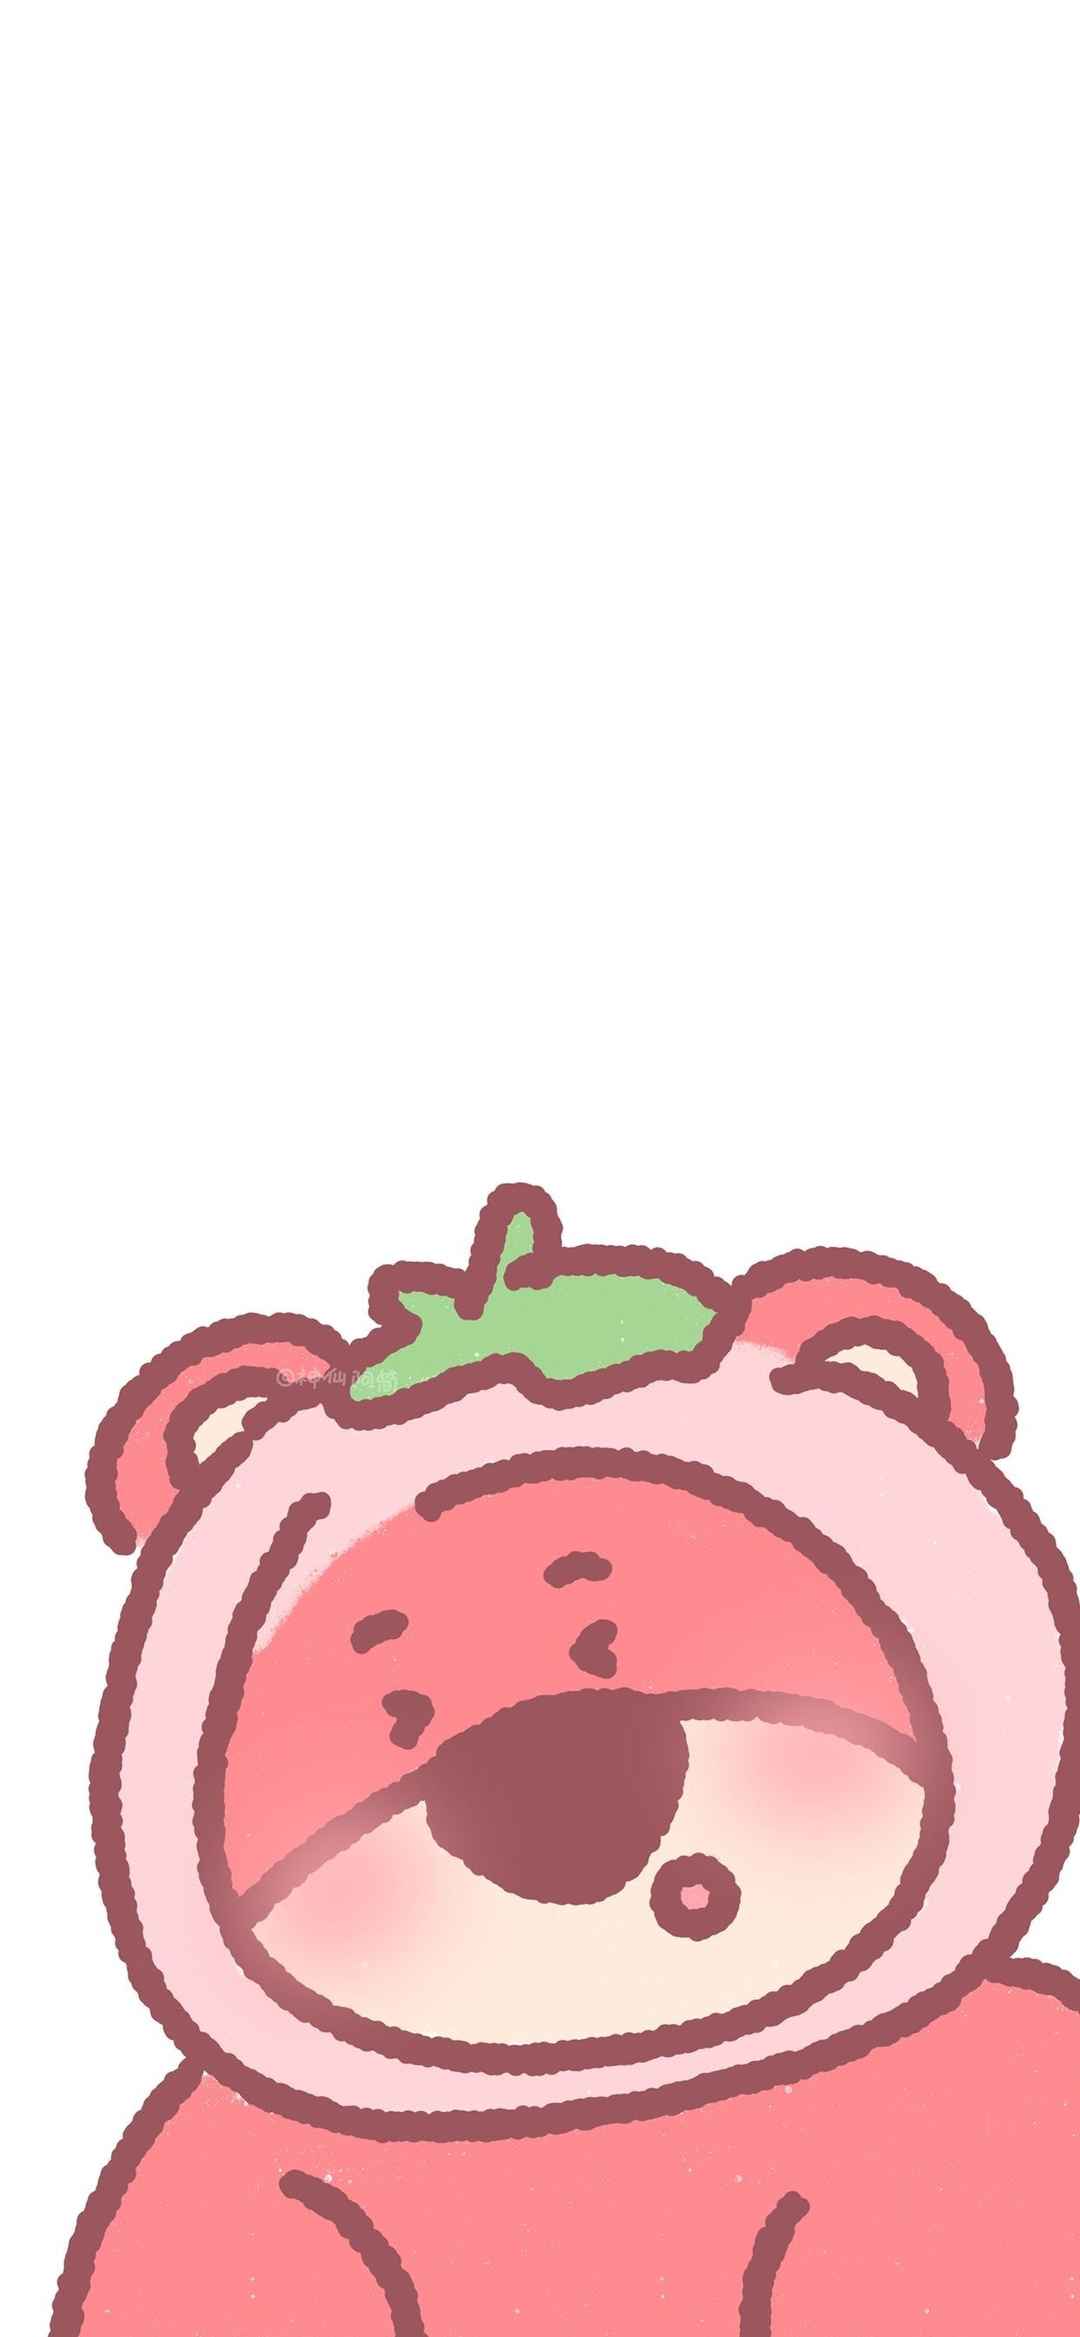 可爱草莓熊卡通手机壁纸